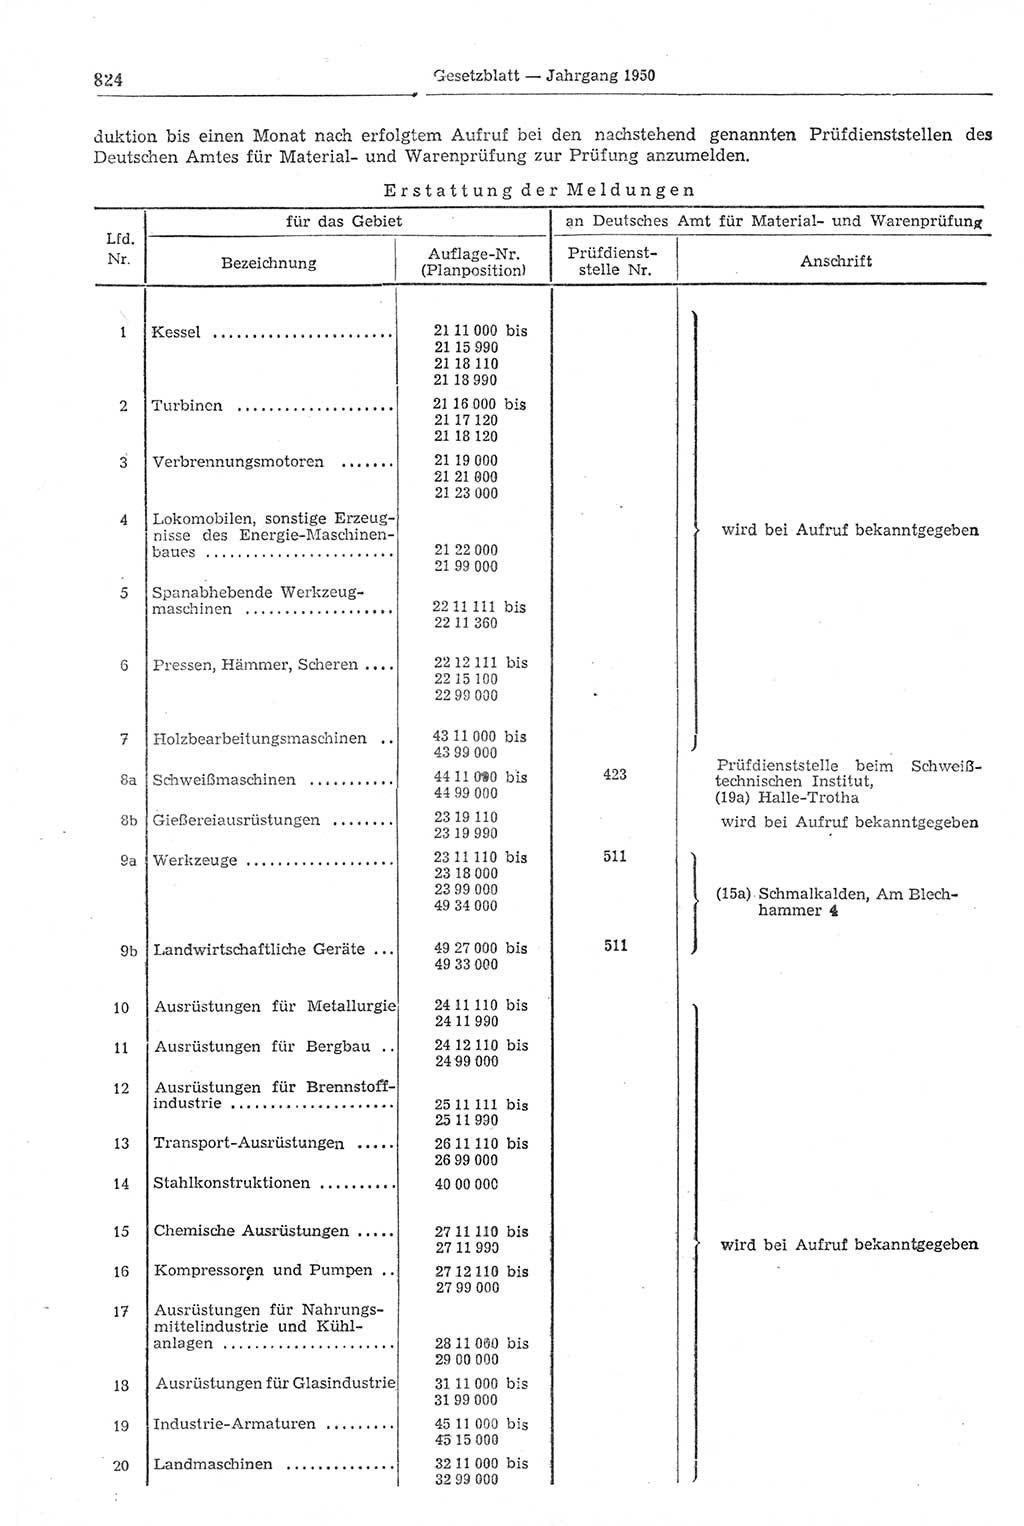 Gesetzblatt (GBl.) der Deutschen Demokratischen Republik (DDR) 1950, Seite 824 (GBl. DDR 1950, S. 824)